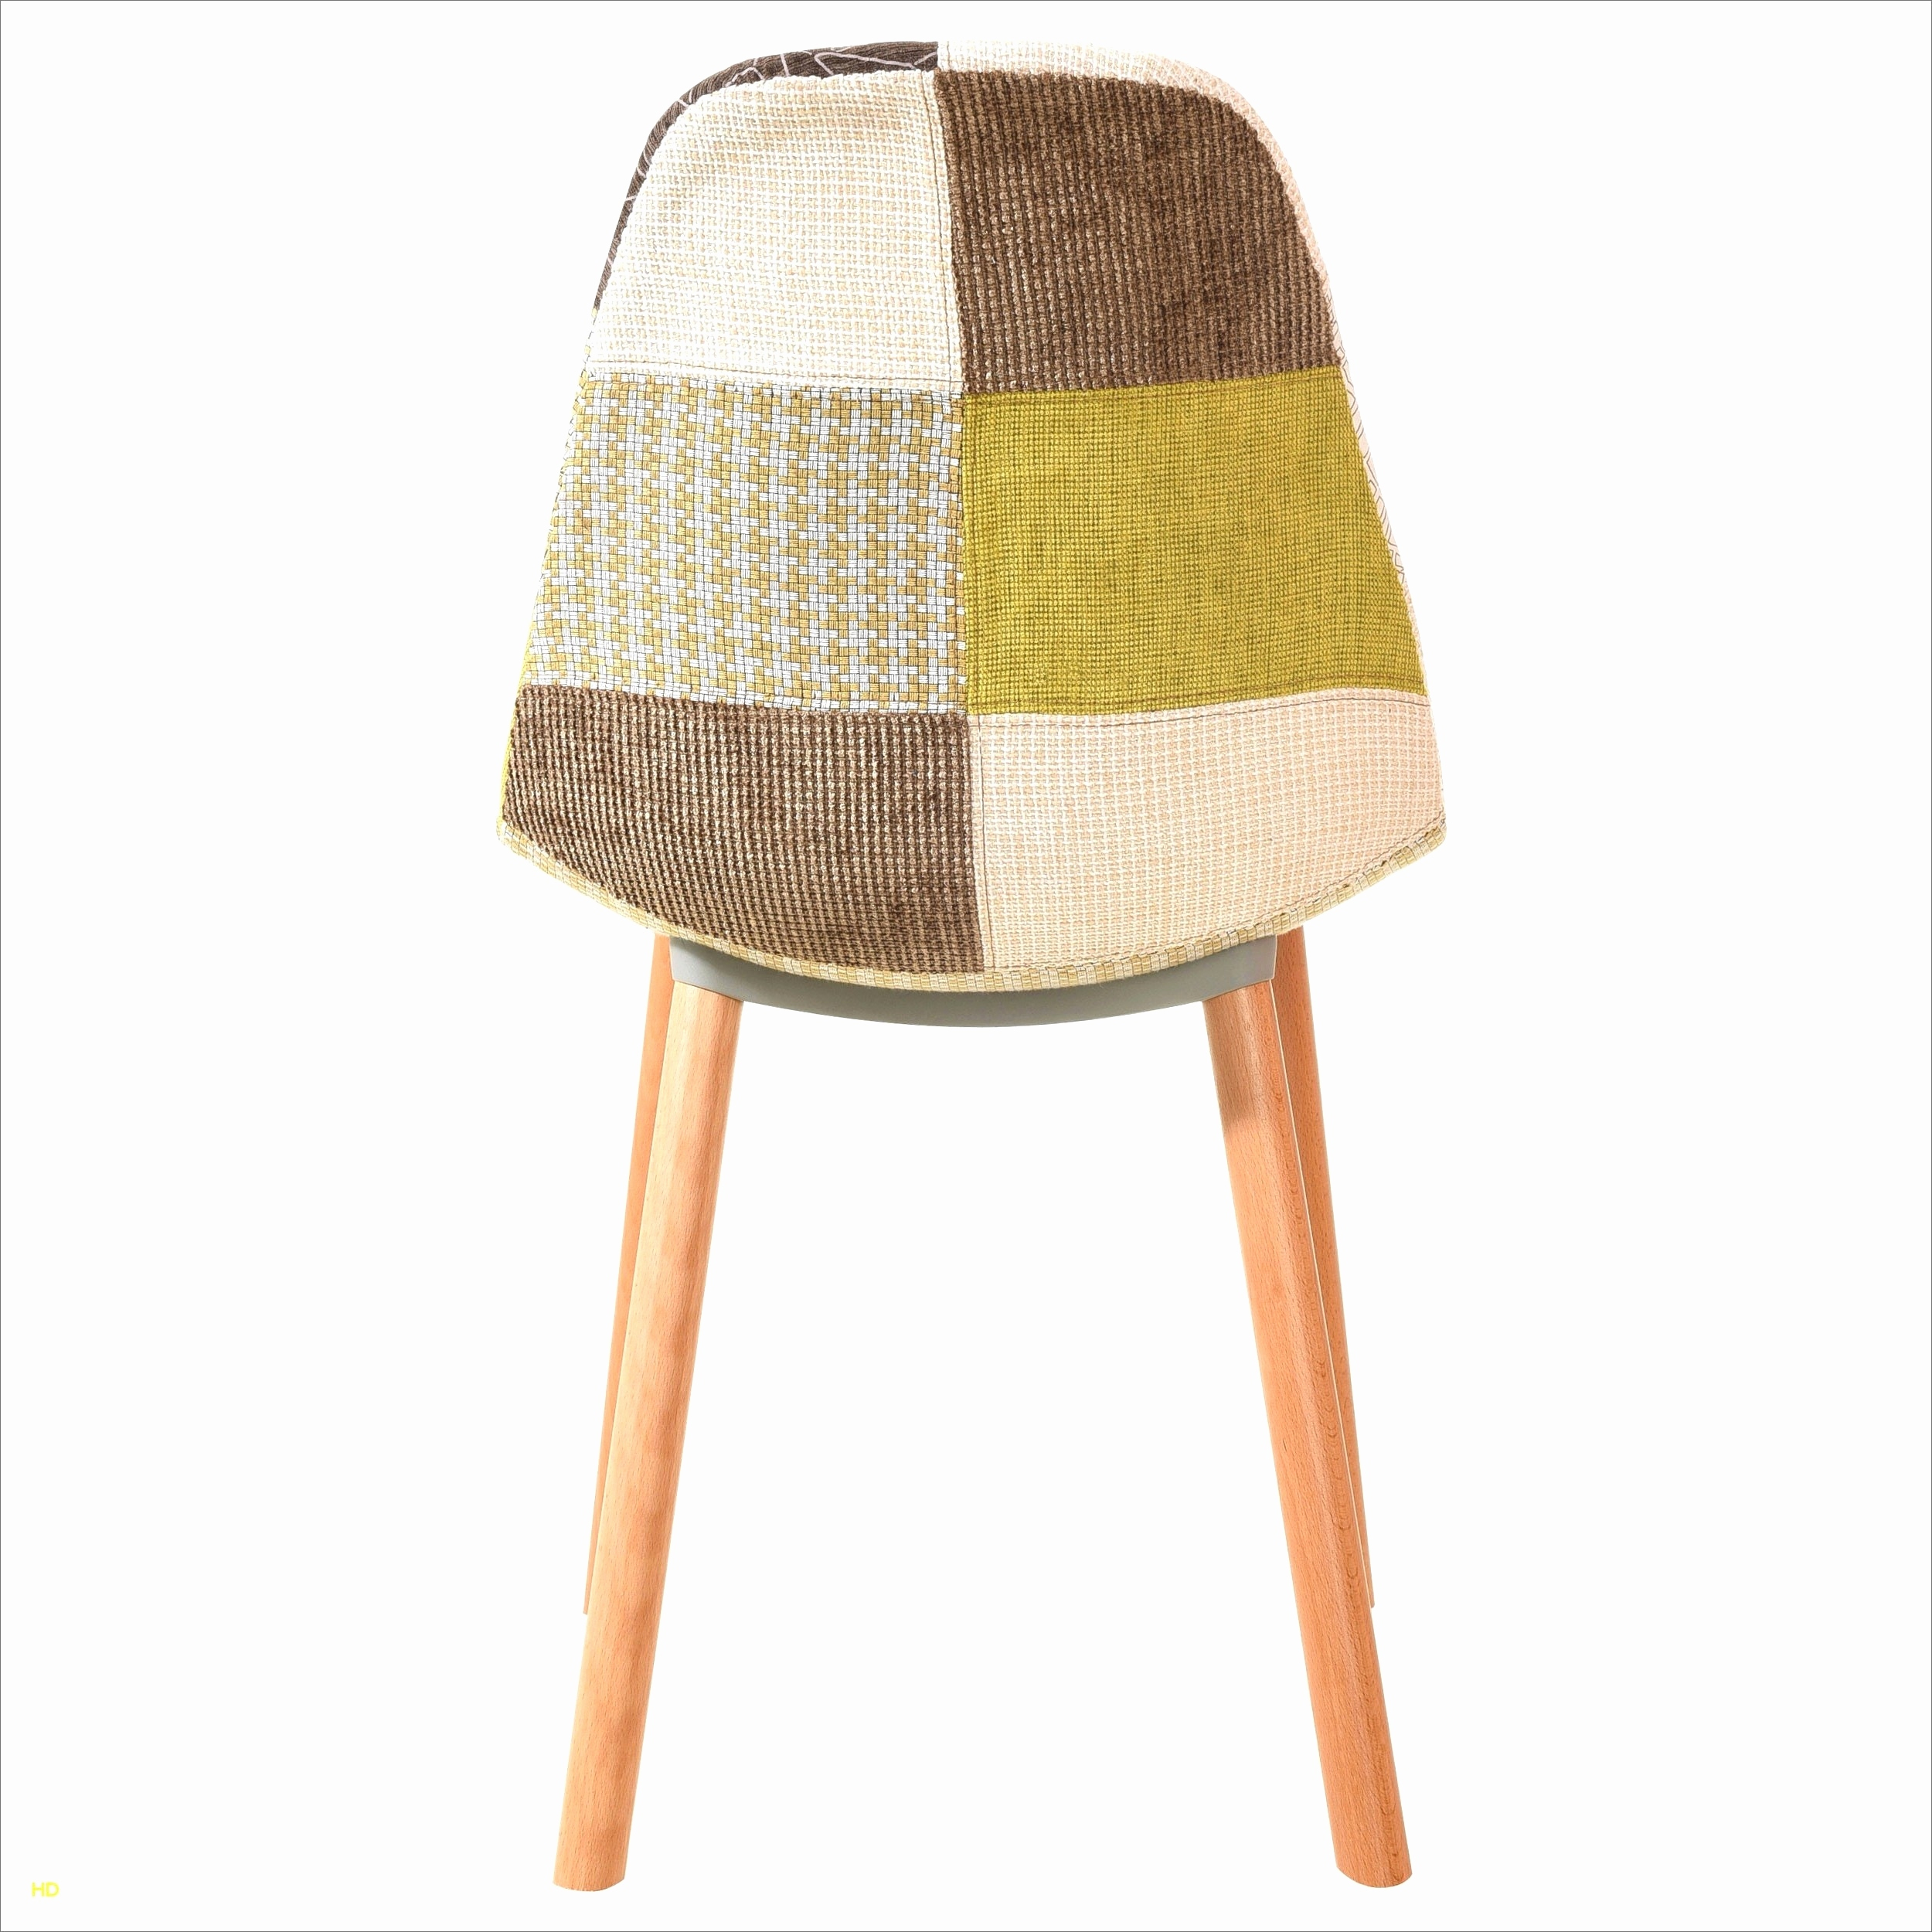 chaise patchwork alinea beau lot de scandinave avec chaise patchwork alinea beau lot de scandinave blanche 0d of